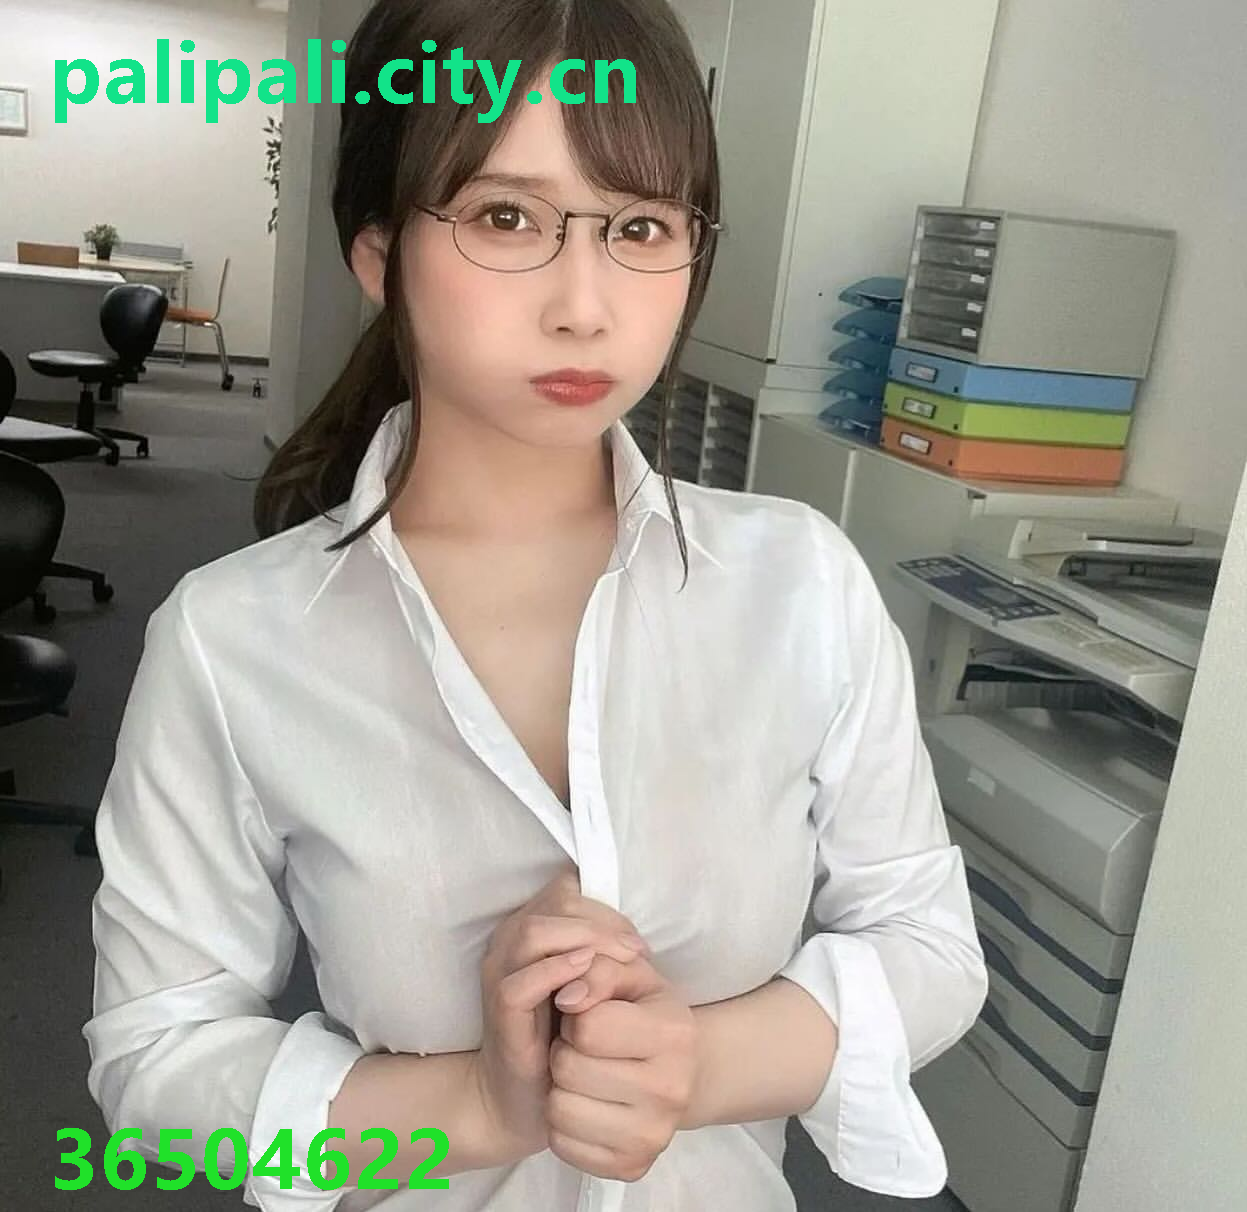 palipali.city.cn